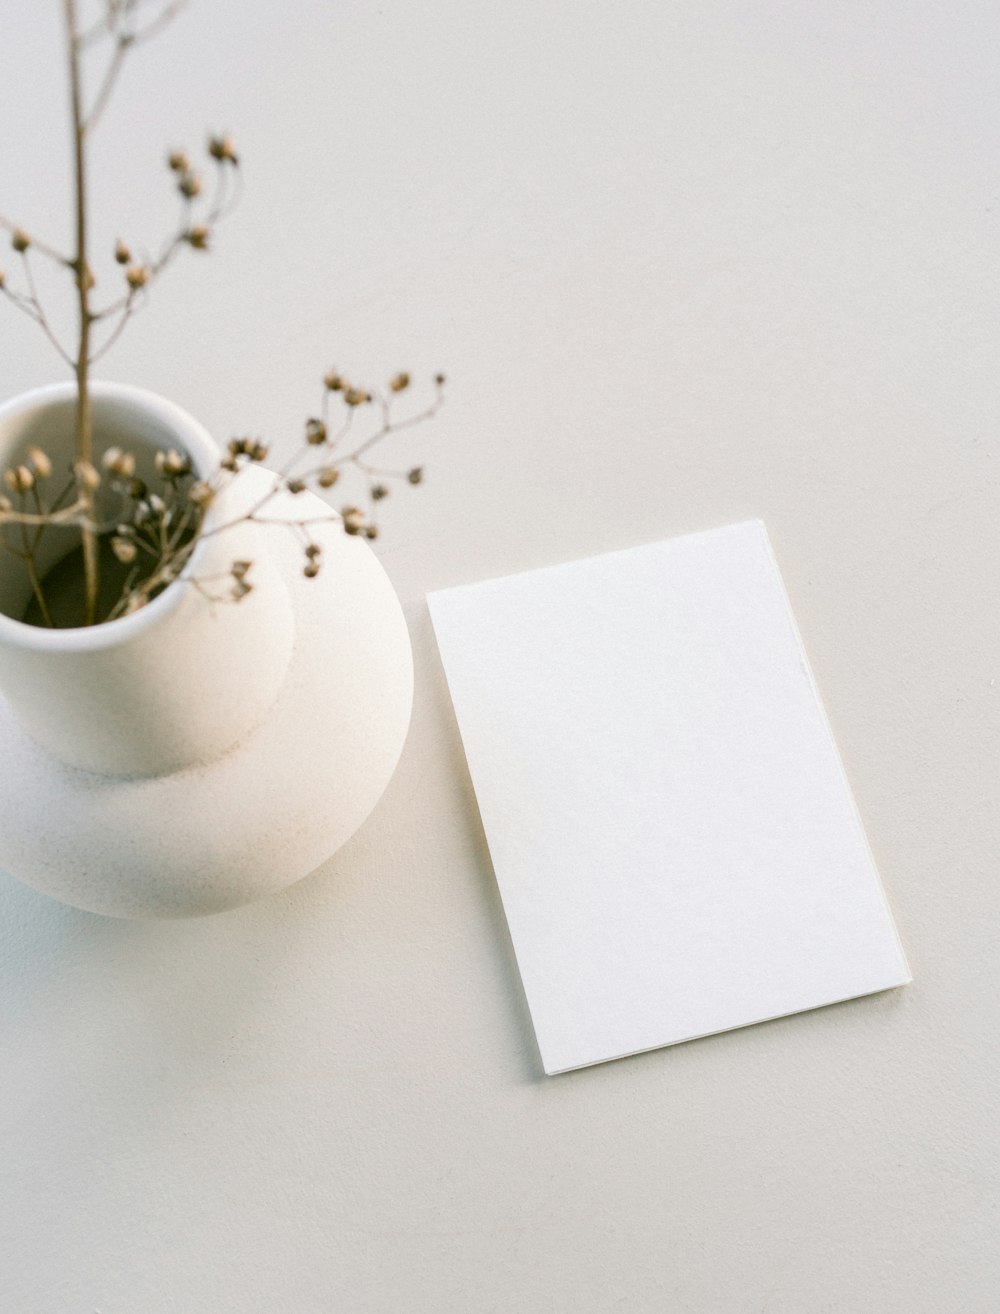 Un jarrón blanco con una planta junto a una tarjeta en blanco